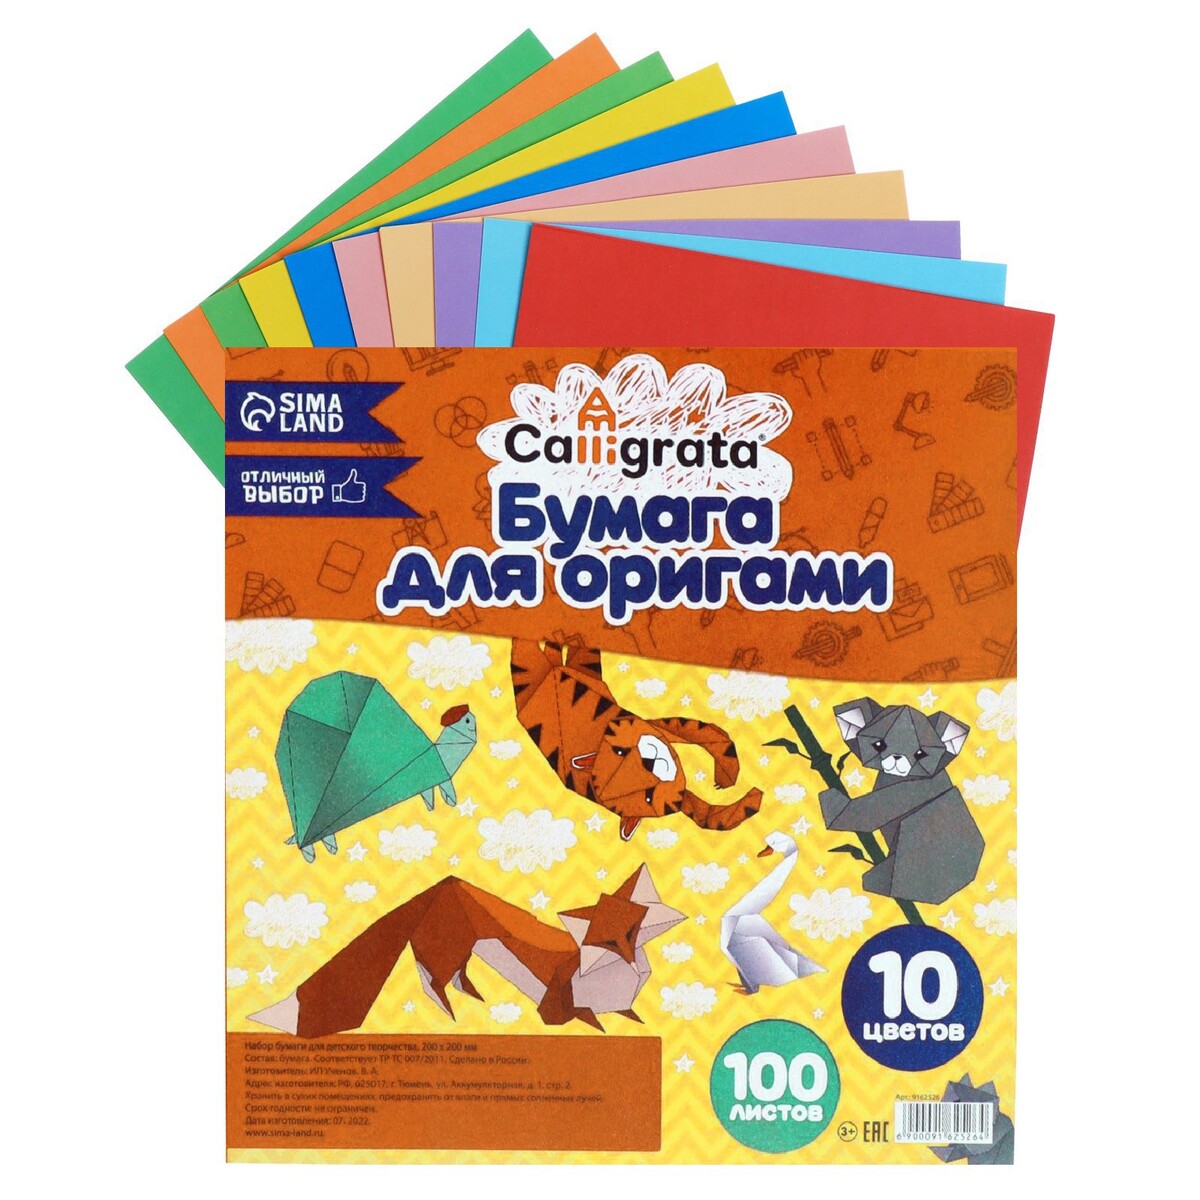 Бумага цветная для оригами и аппликаций 20 х 20 см, 100 листов, 10 цветов, calligrata бумага масштабно координатная а3 10 листов calligrata оранжевая сетка